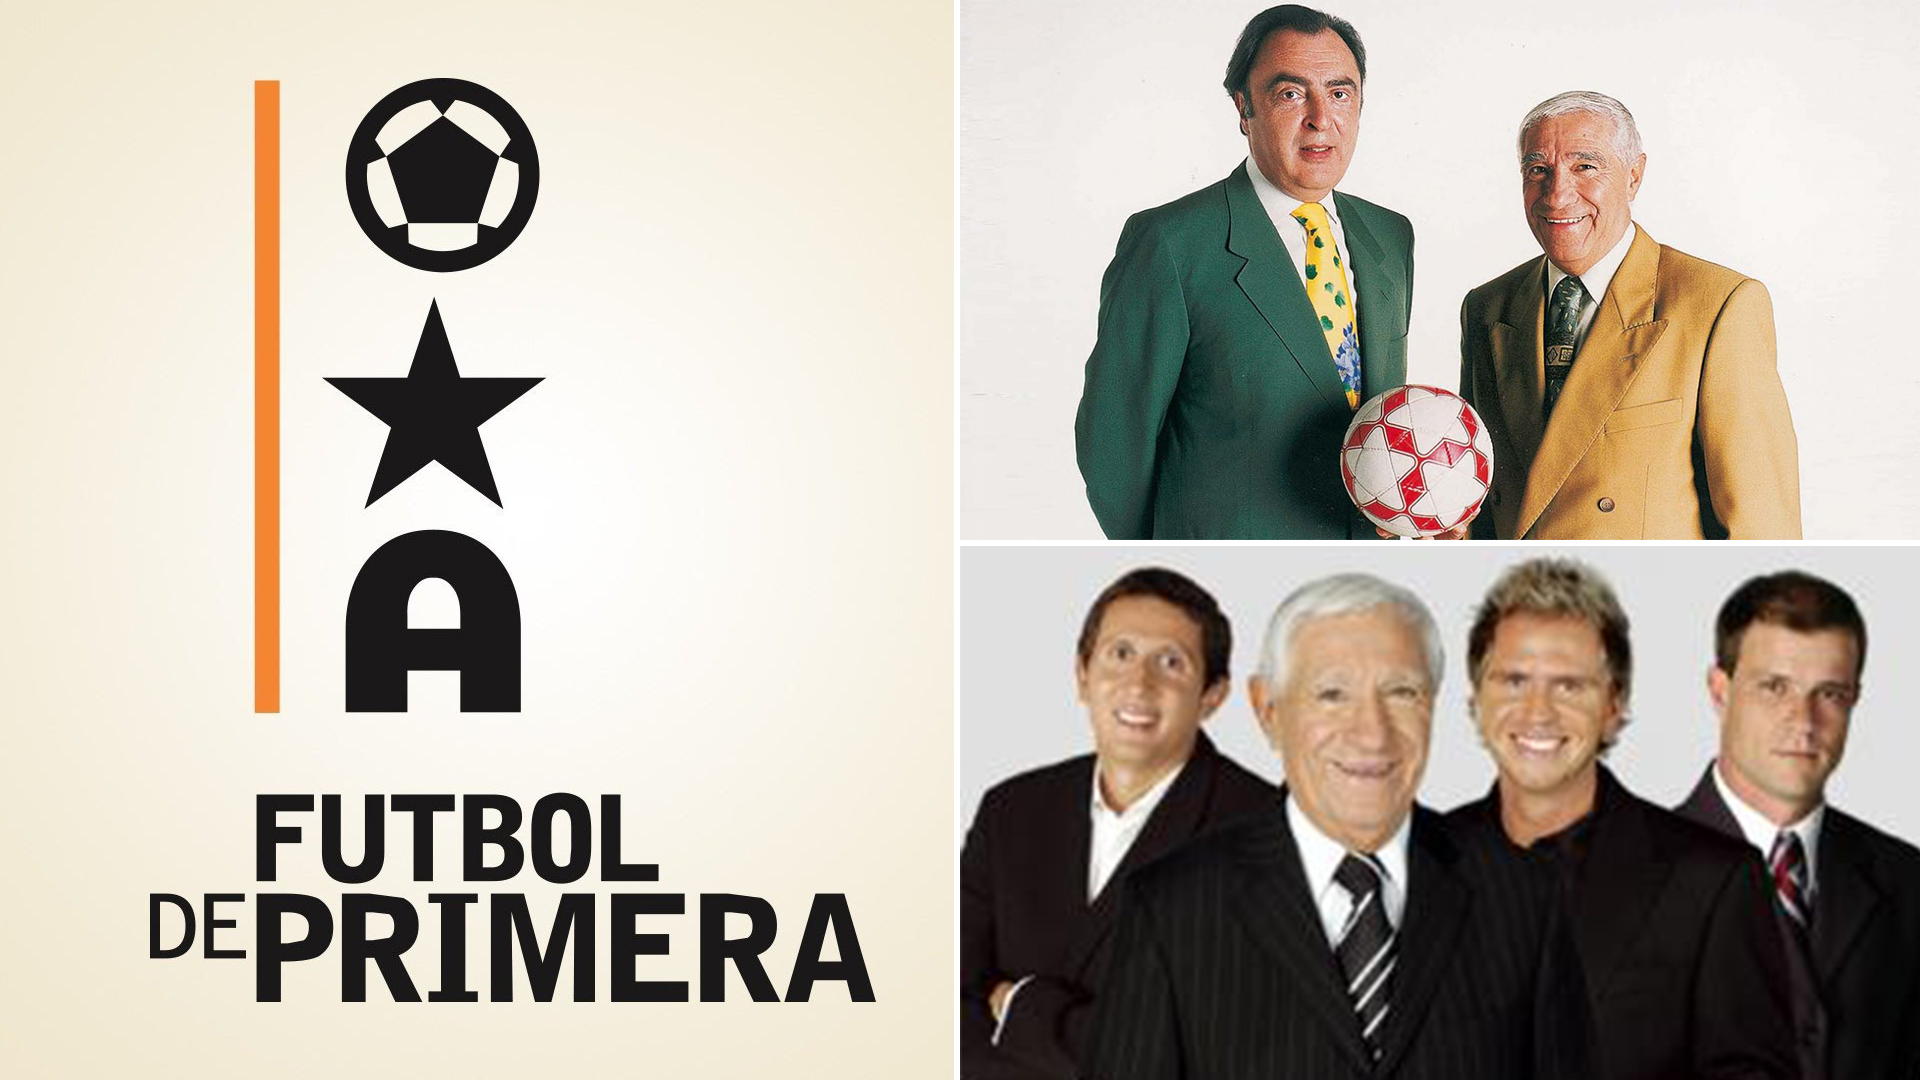 Los de Fútbol de a 35 años de la emisión de primer programa - Infobae